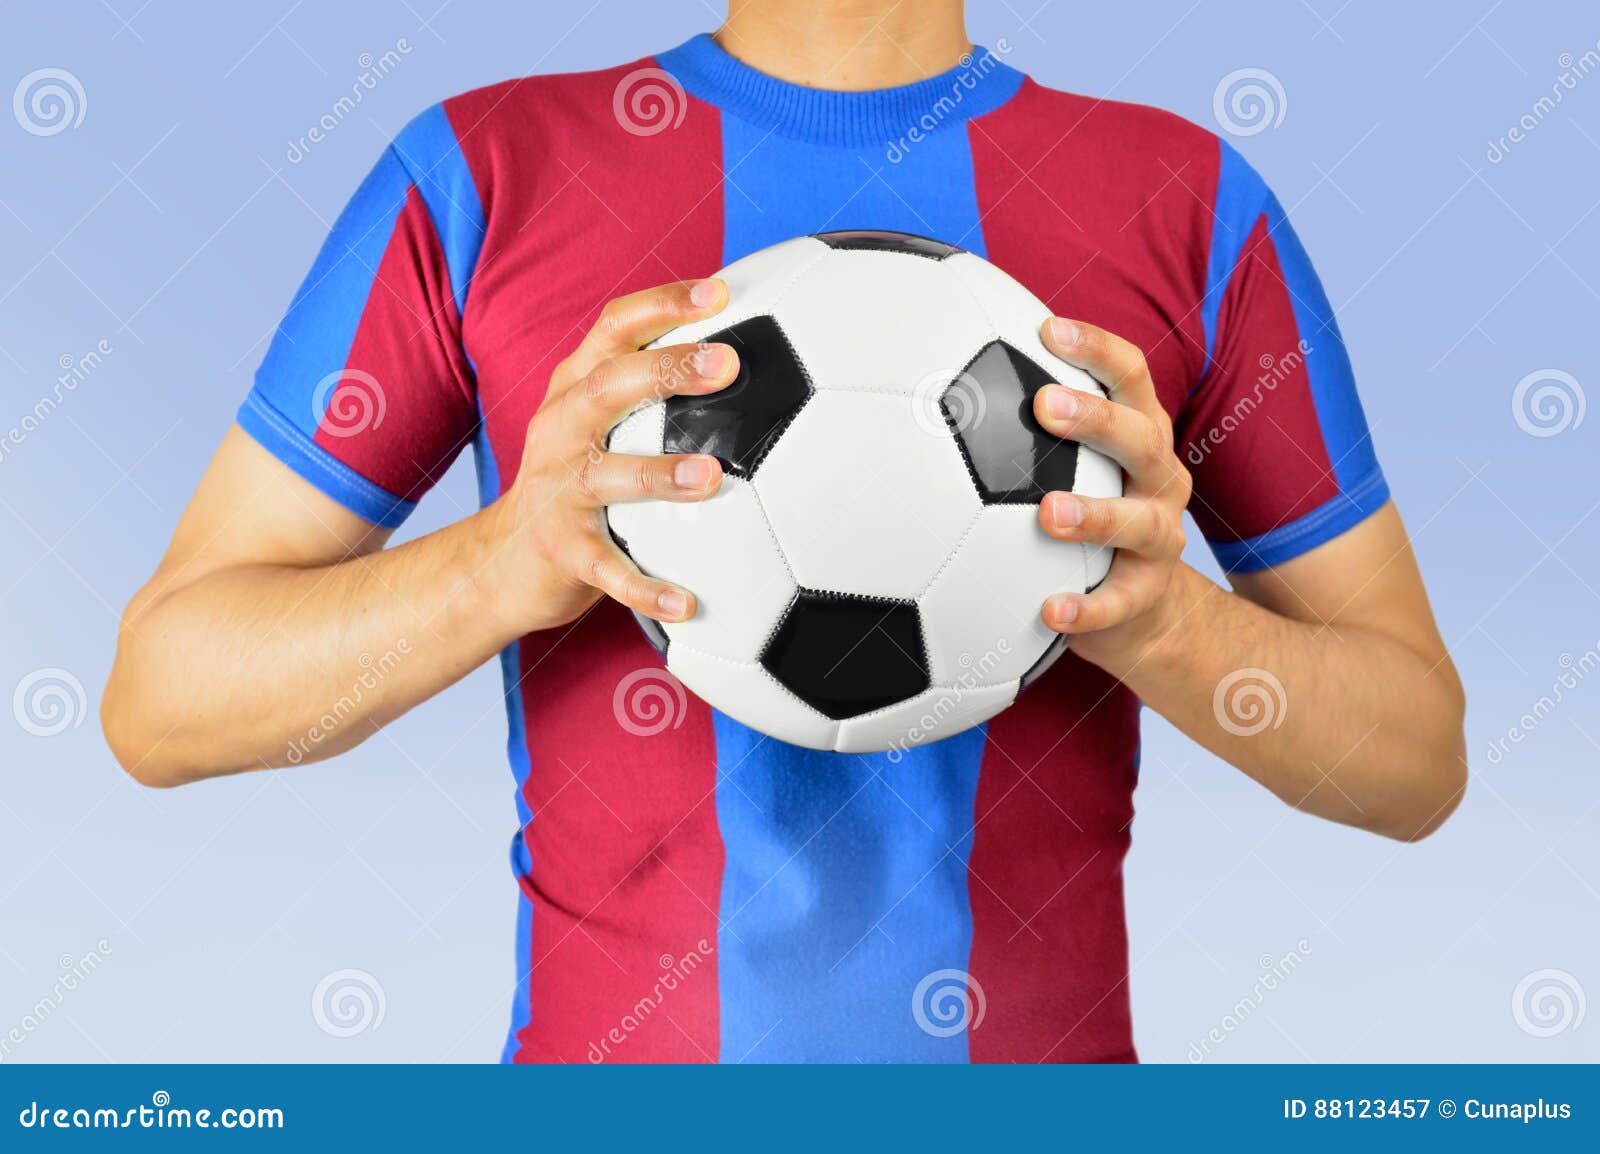 Мяч мужской род. Футбольный мяч в руках. Рука держит мяч. Футбол с мячом в руках. Мячик в руке.